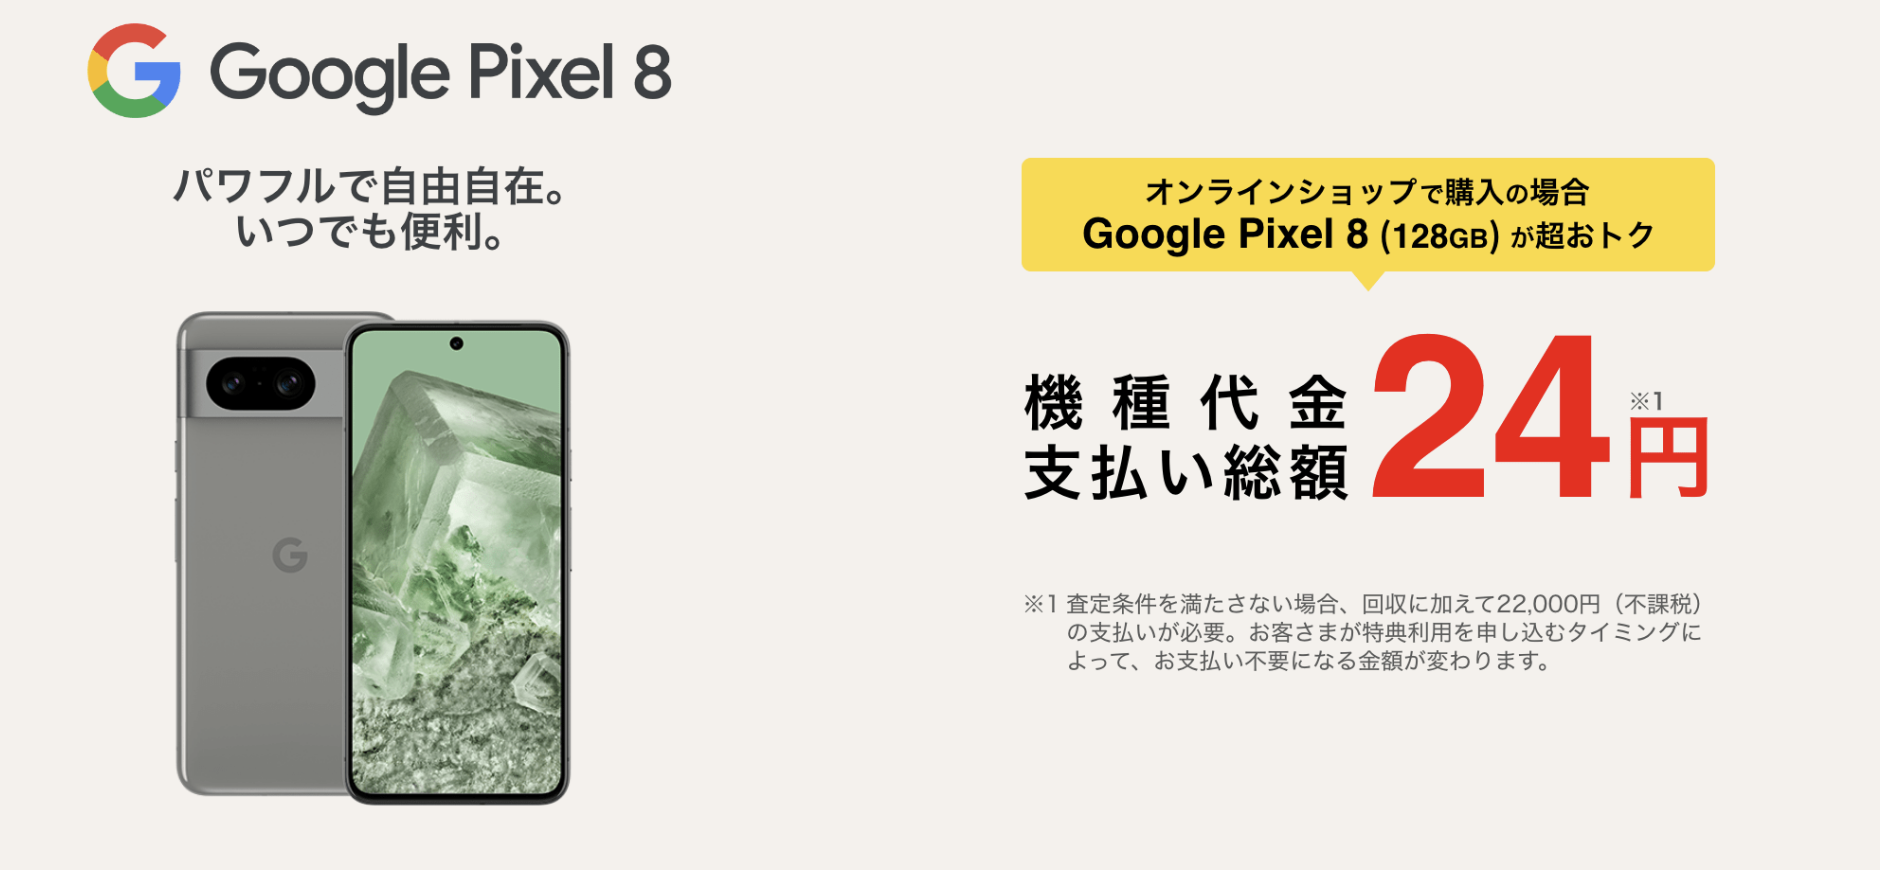 【ソフトバンク】Google Pixel 8 購入特典